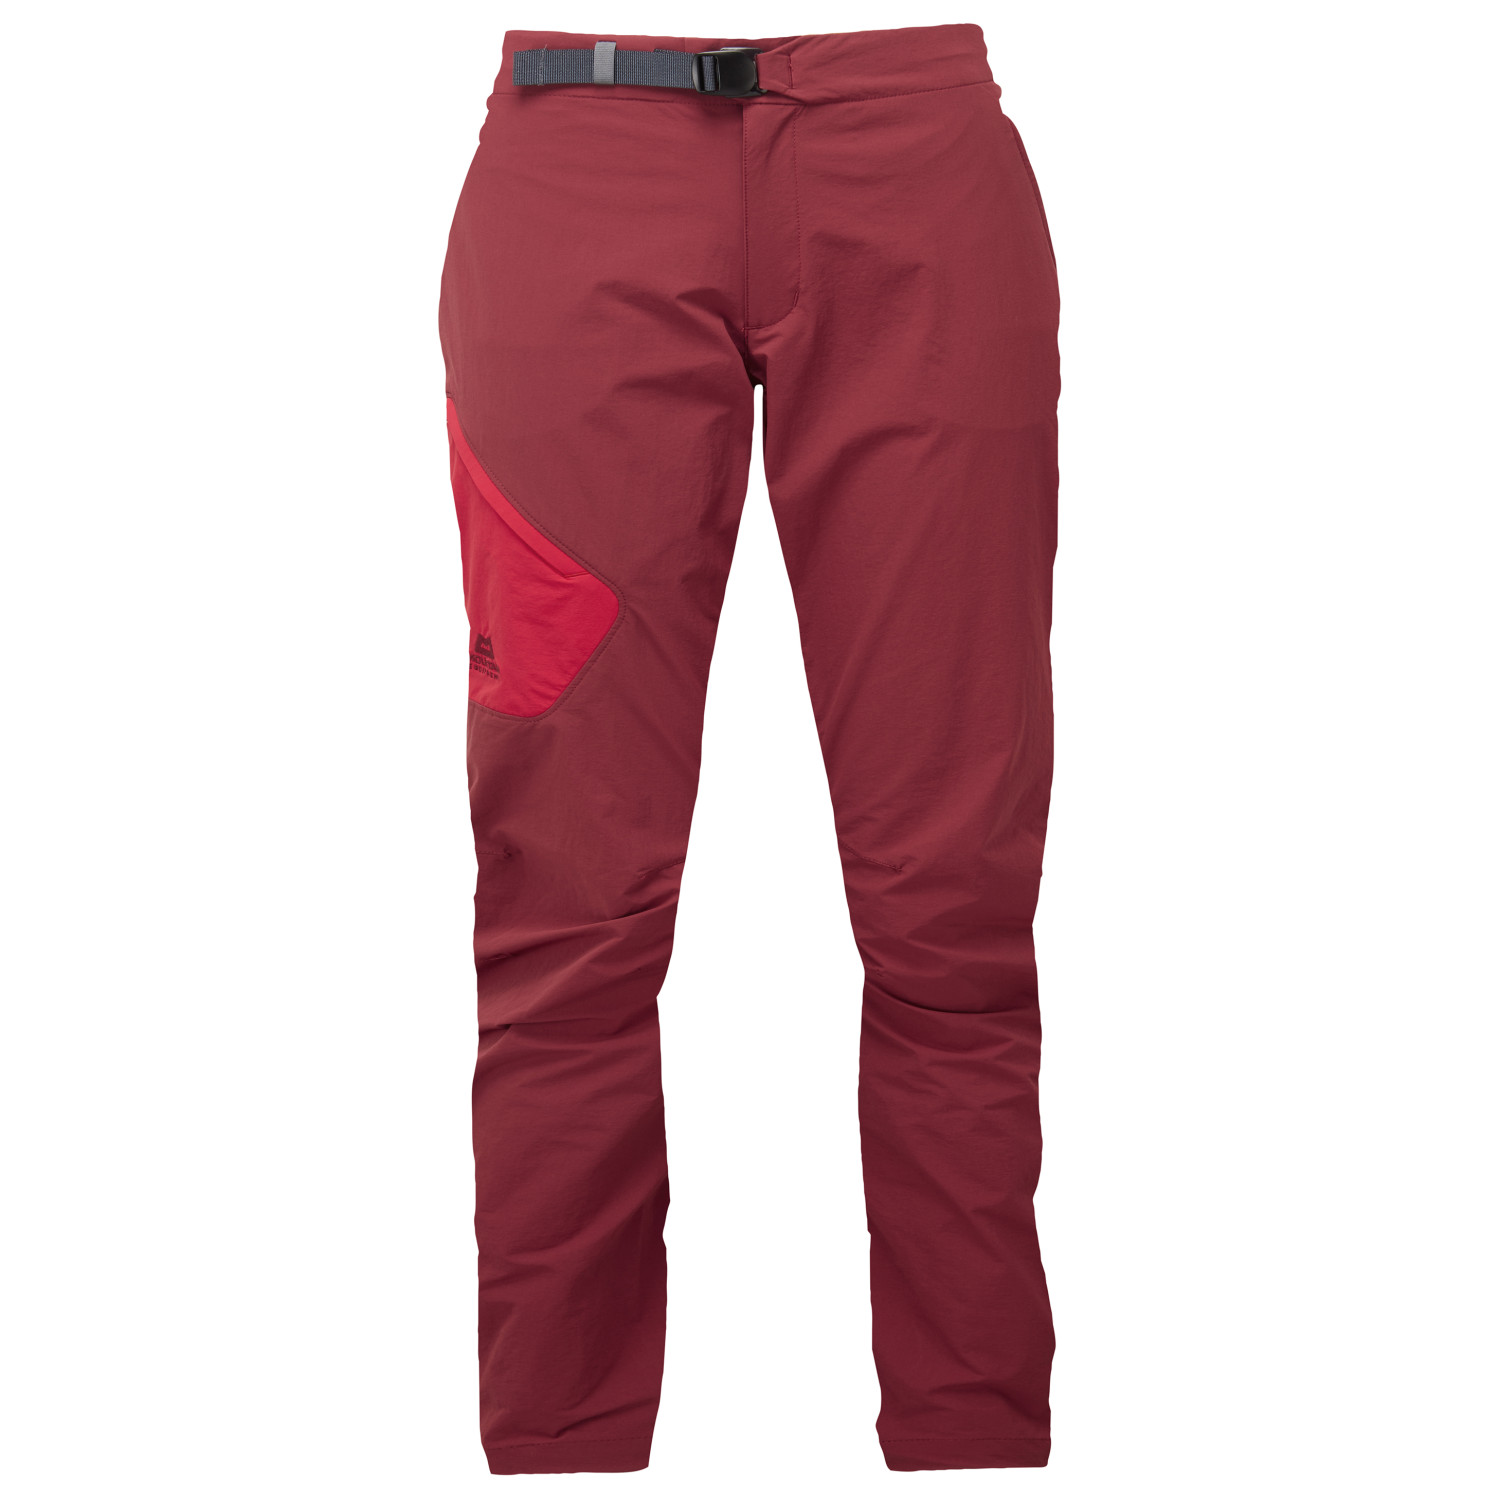 Трекинговые брюки Mountain Equipment Women's Comici 2 Pant, цвет Tibetan Red/Capsicum